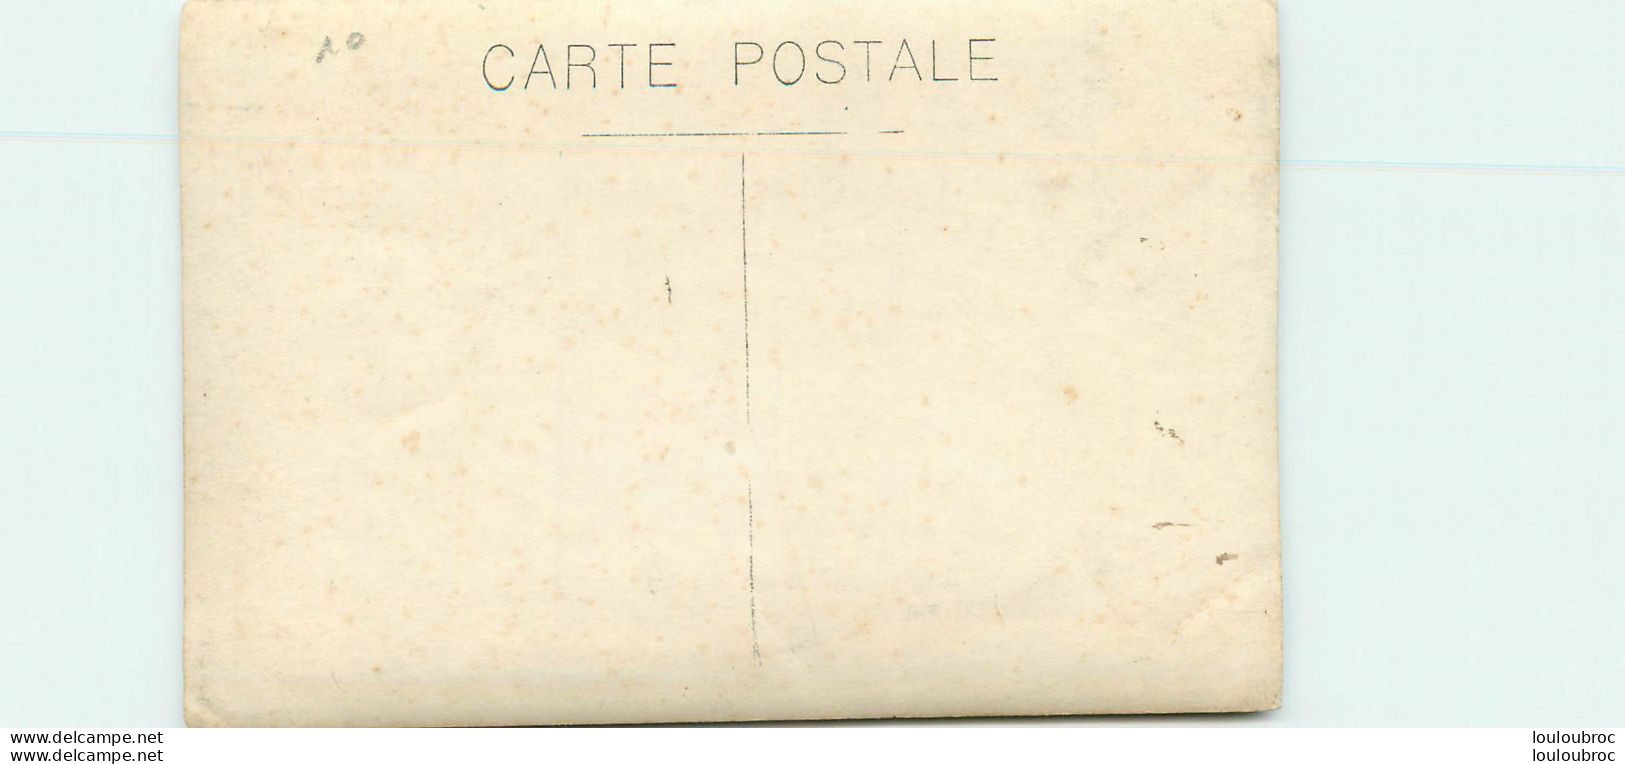 CARTE PHOTO  SOUVENIR D'UNE BONNE JOURNEE LIEU NON IDENTIFIE 02 AVRIL 1922 - To Identify